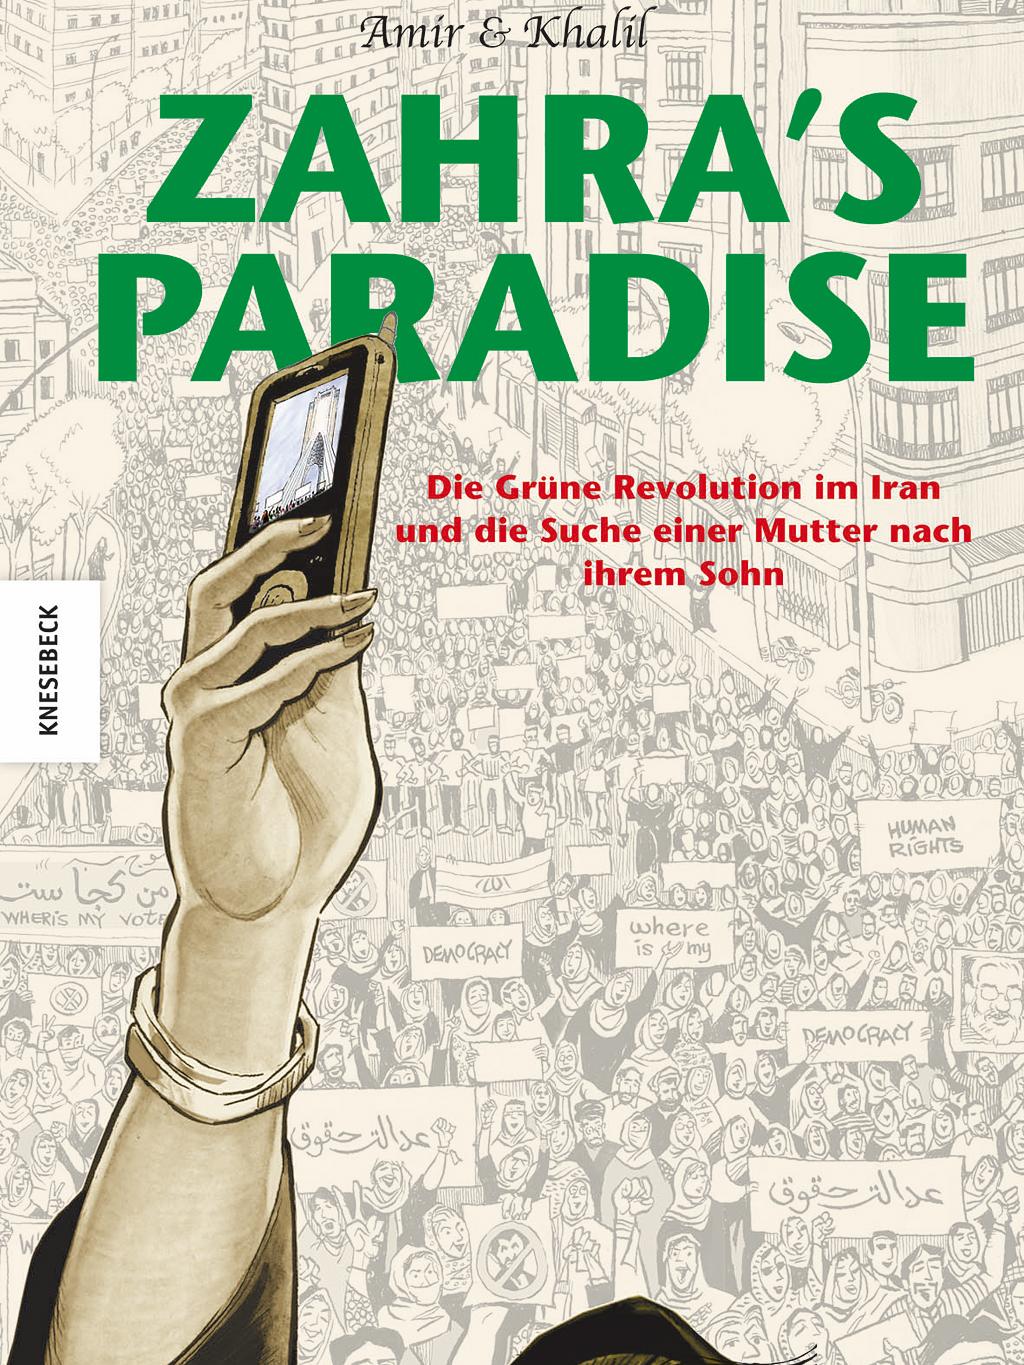 Buchcover Amir und Khalil: "Zahra's Paradise" im Verlag Knesebeck